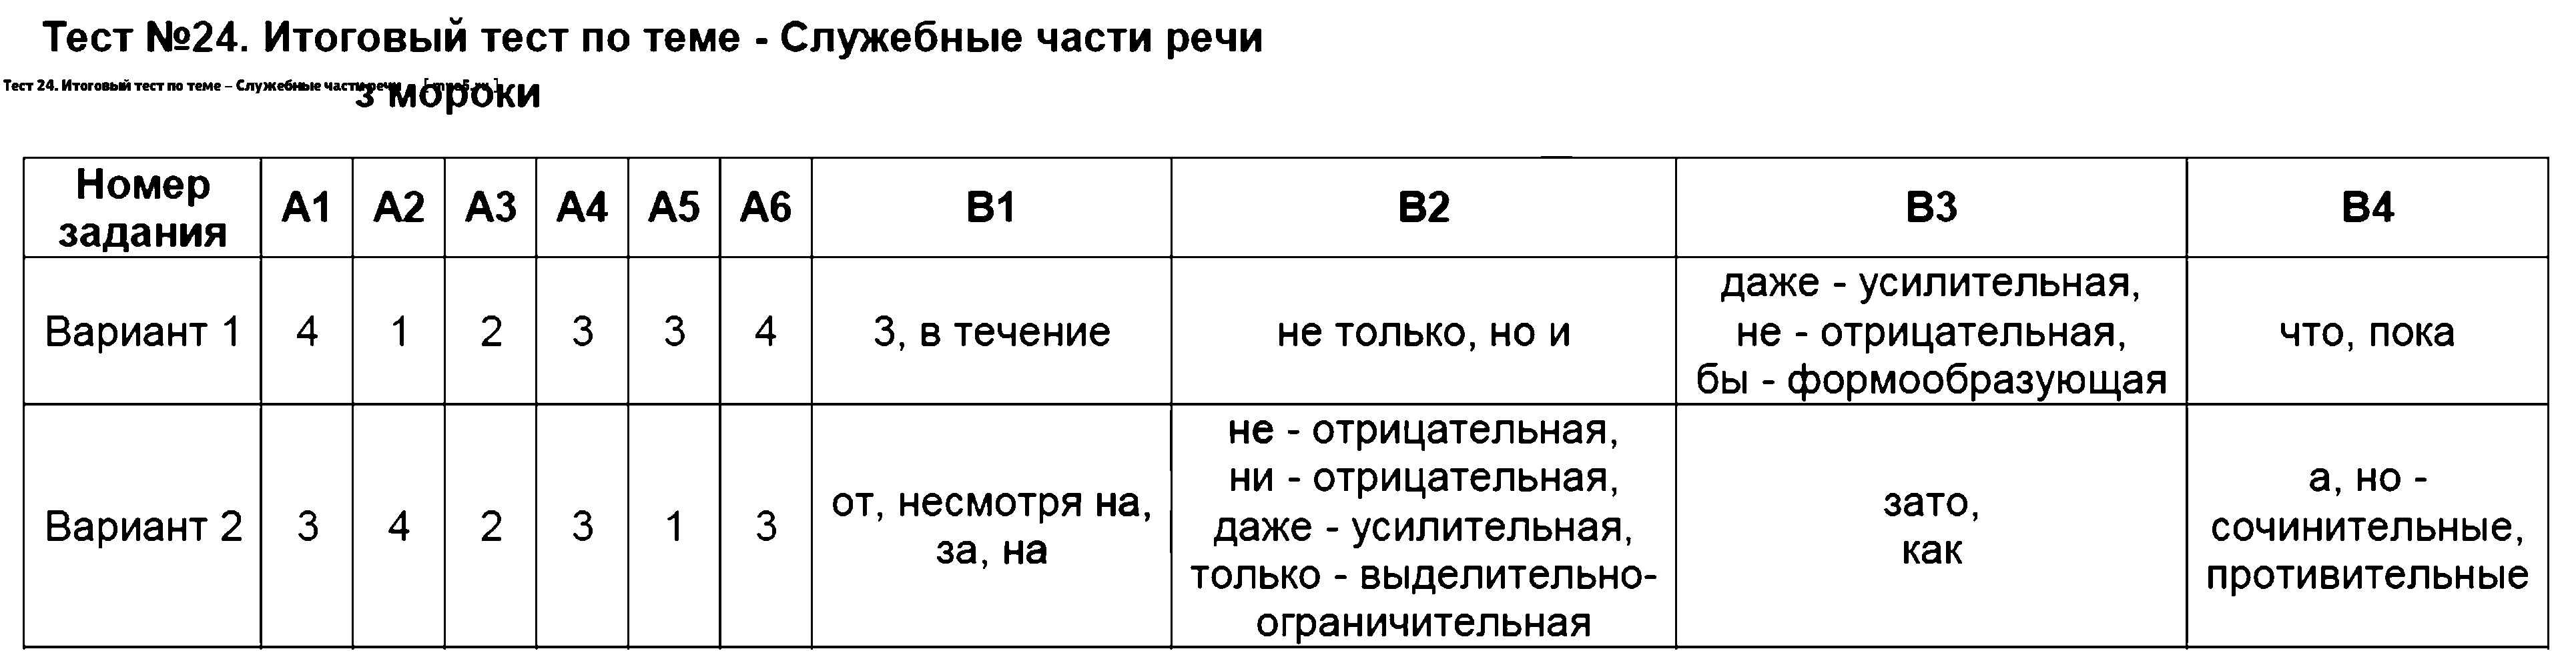 ГДЗ Русский язык 7 класс - Тест 24. Итоговый тест по теме - Служебные части речи